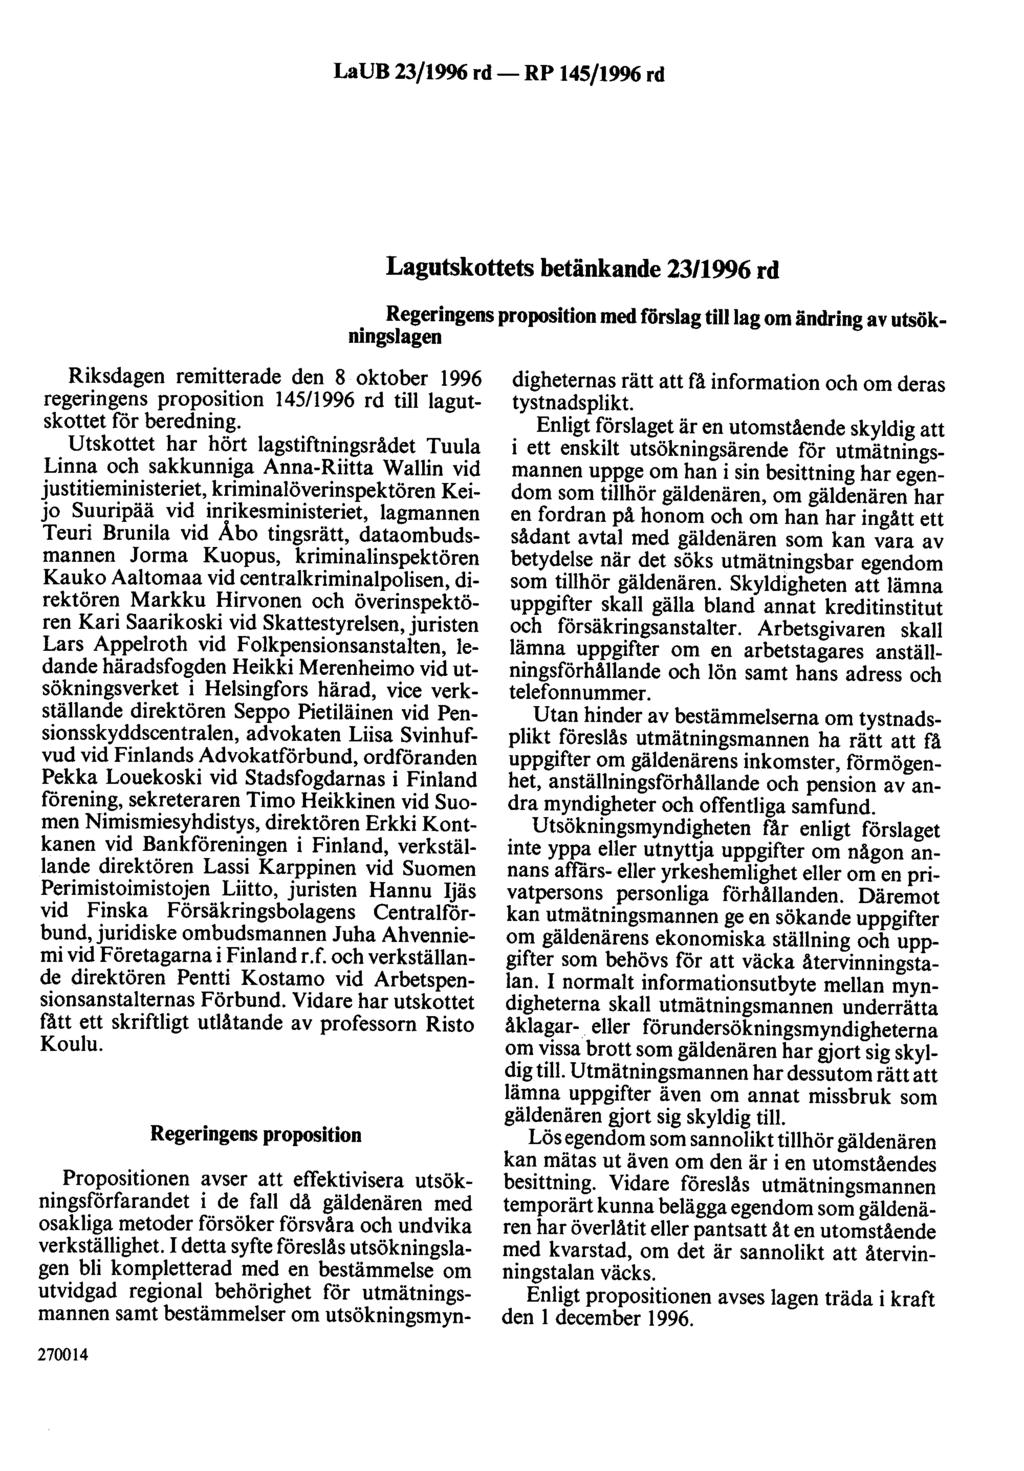 LaUB 23/1996 rd- RP 145/1996 rd Lagutskottets betänkande 23/1996 rd Regeringens proposition med förslag tilllag om ändring av utsökningslagen Riksdagen remitterade den 8 oktober 1996 regeringens